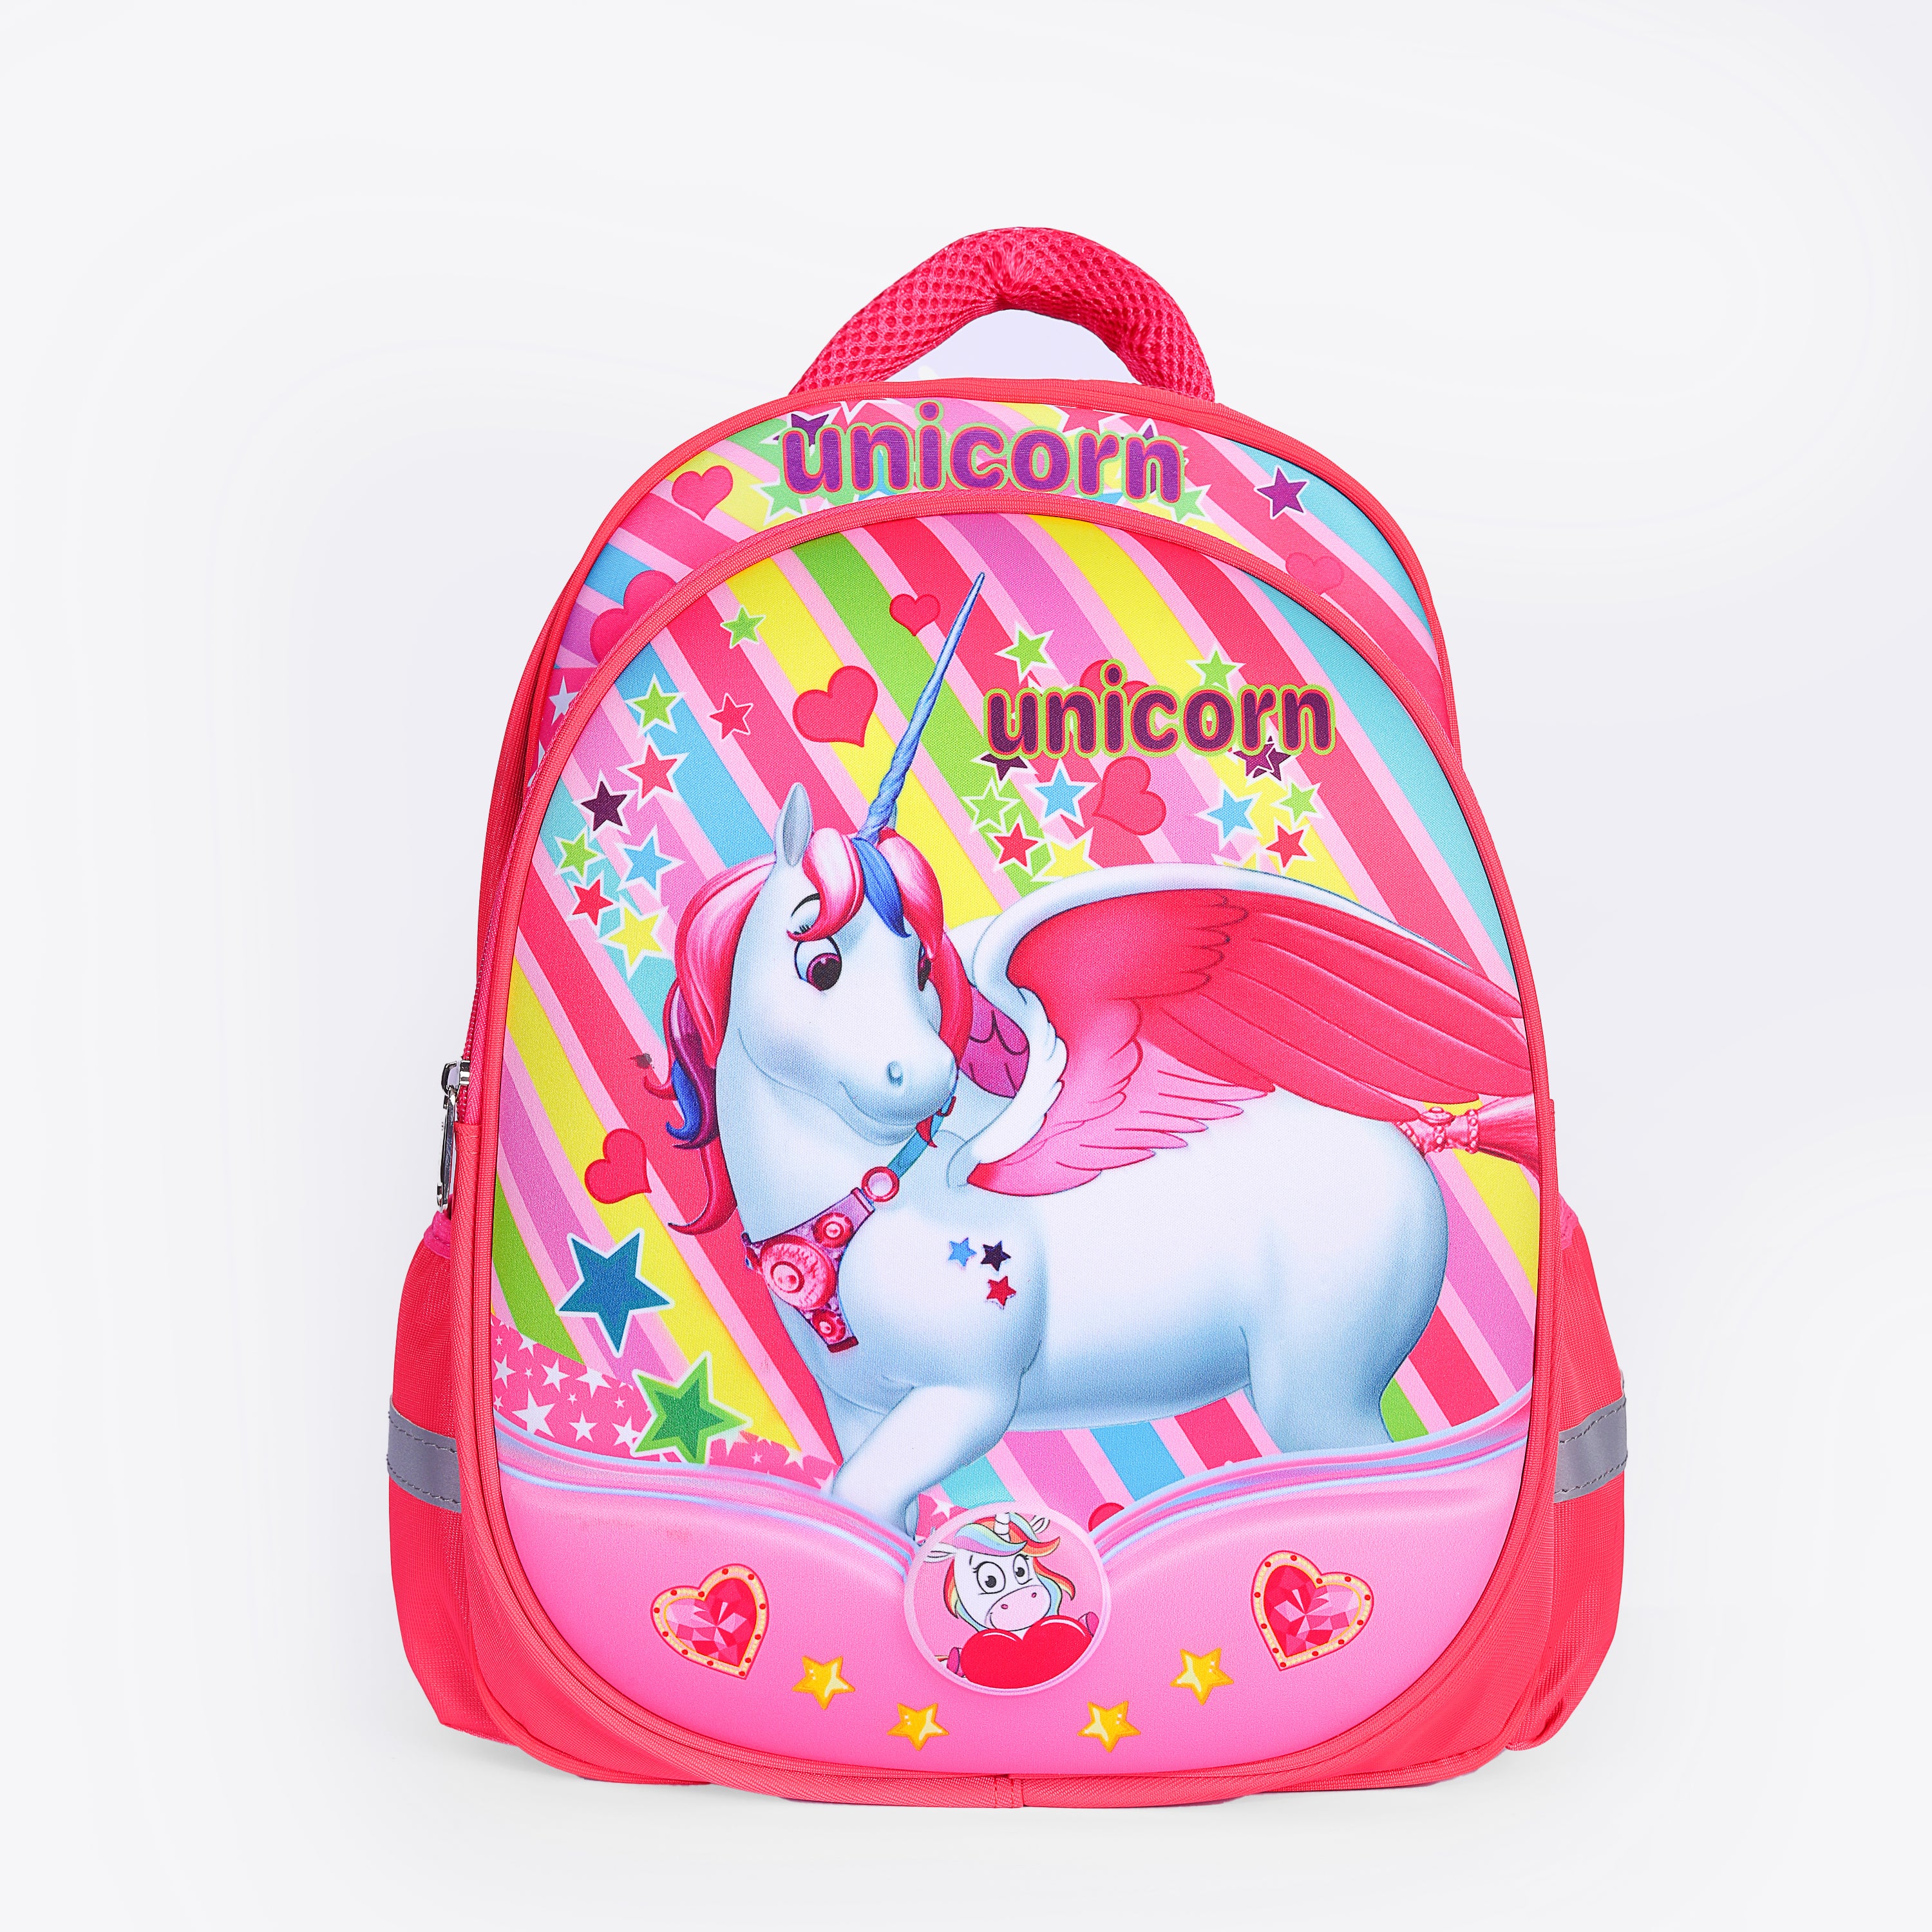 Unicorn II Bag For Girls